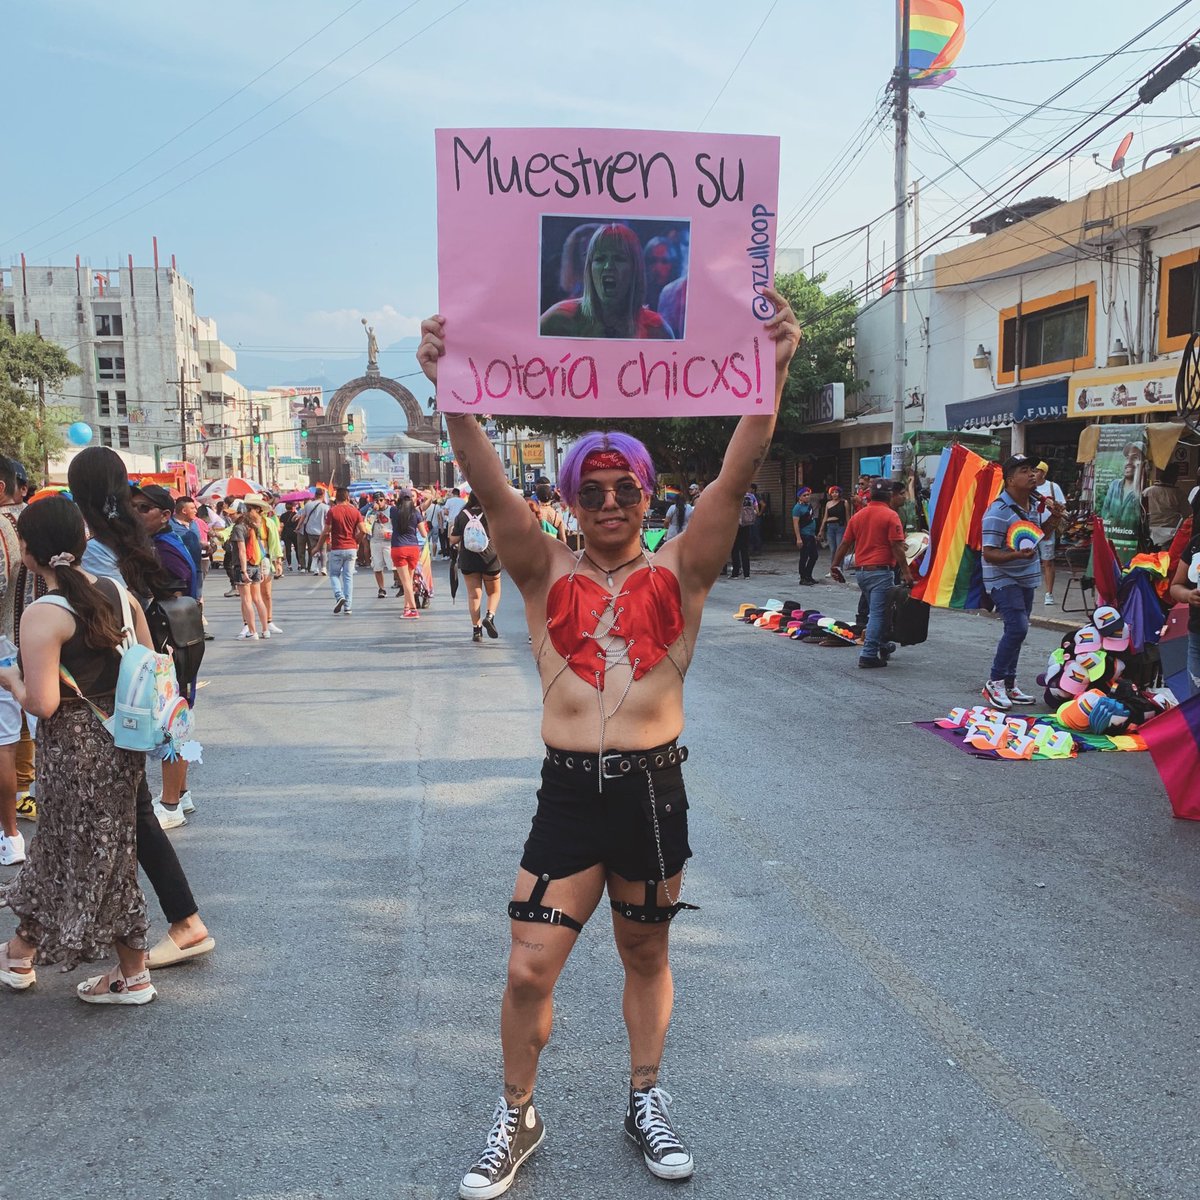 🏳️‍🌈MUESTREN SU JOTERÍA CHICXS!🏳️‍🌈

#pride #PrideMexico #Pride2023 #pridemonterrey #PrideMty